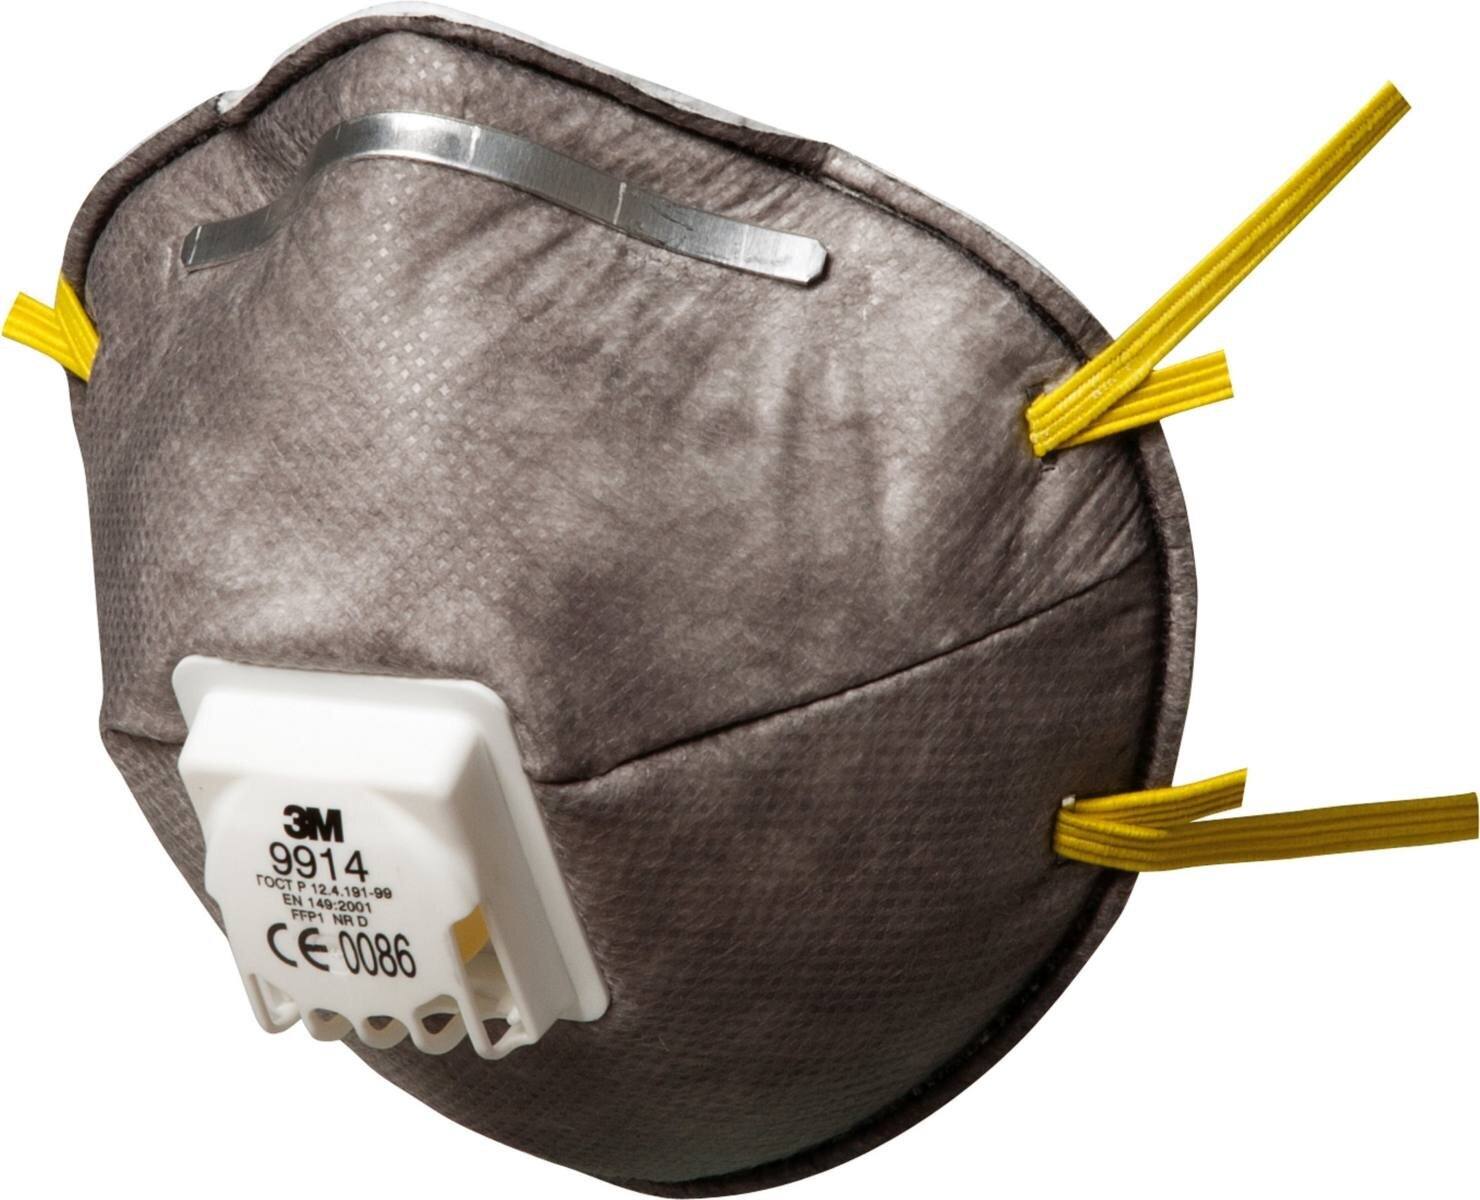 3M 9914 Máscara de protección contra olores FFP1 con válvula de exhalación de flujo frío, hasta 4 veces el valor límite y contra olores orgánicos por debajo del valor límite